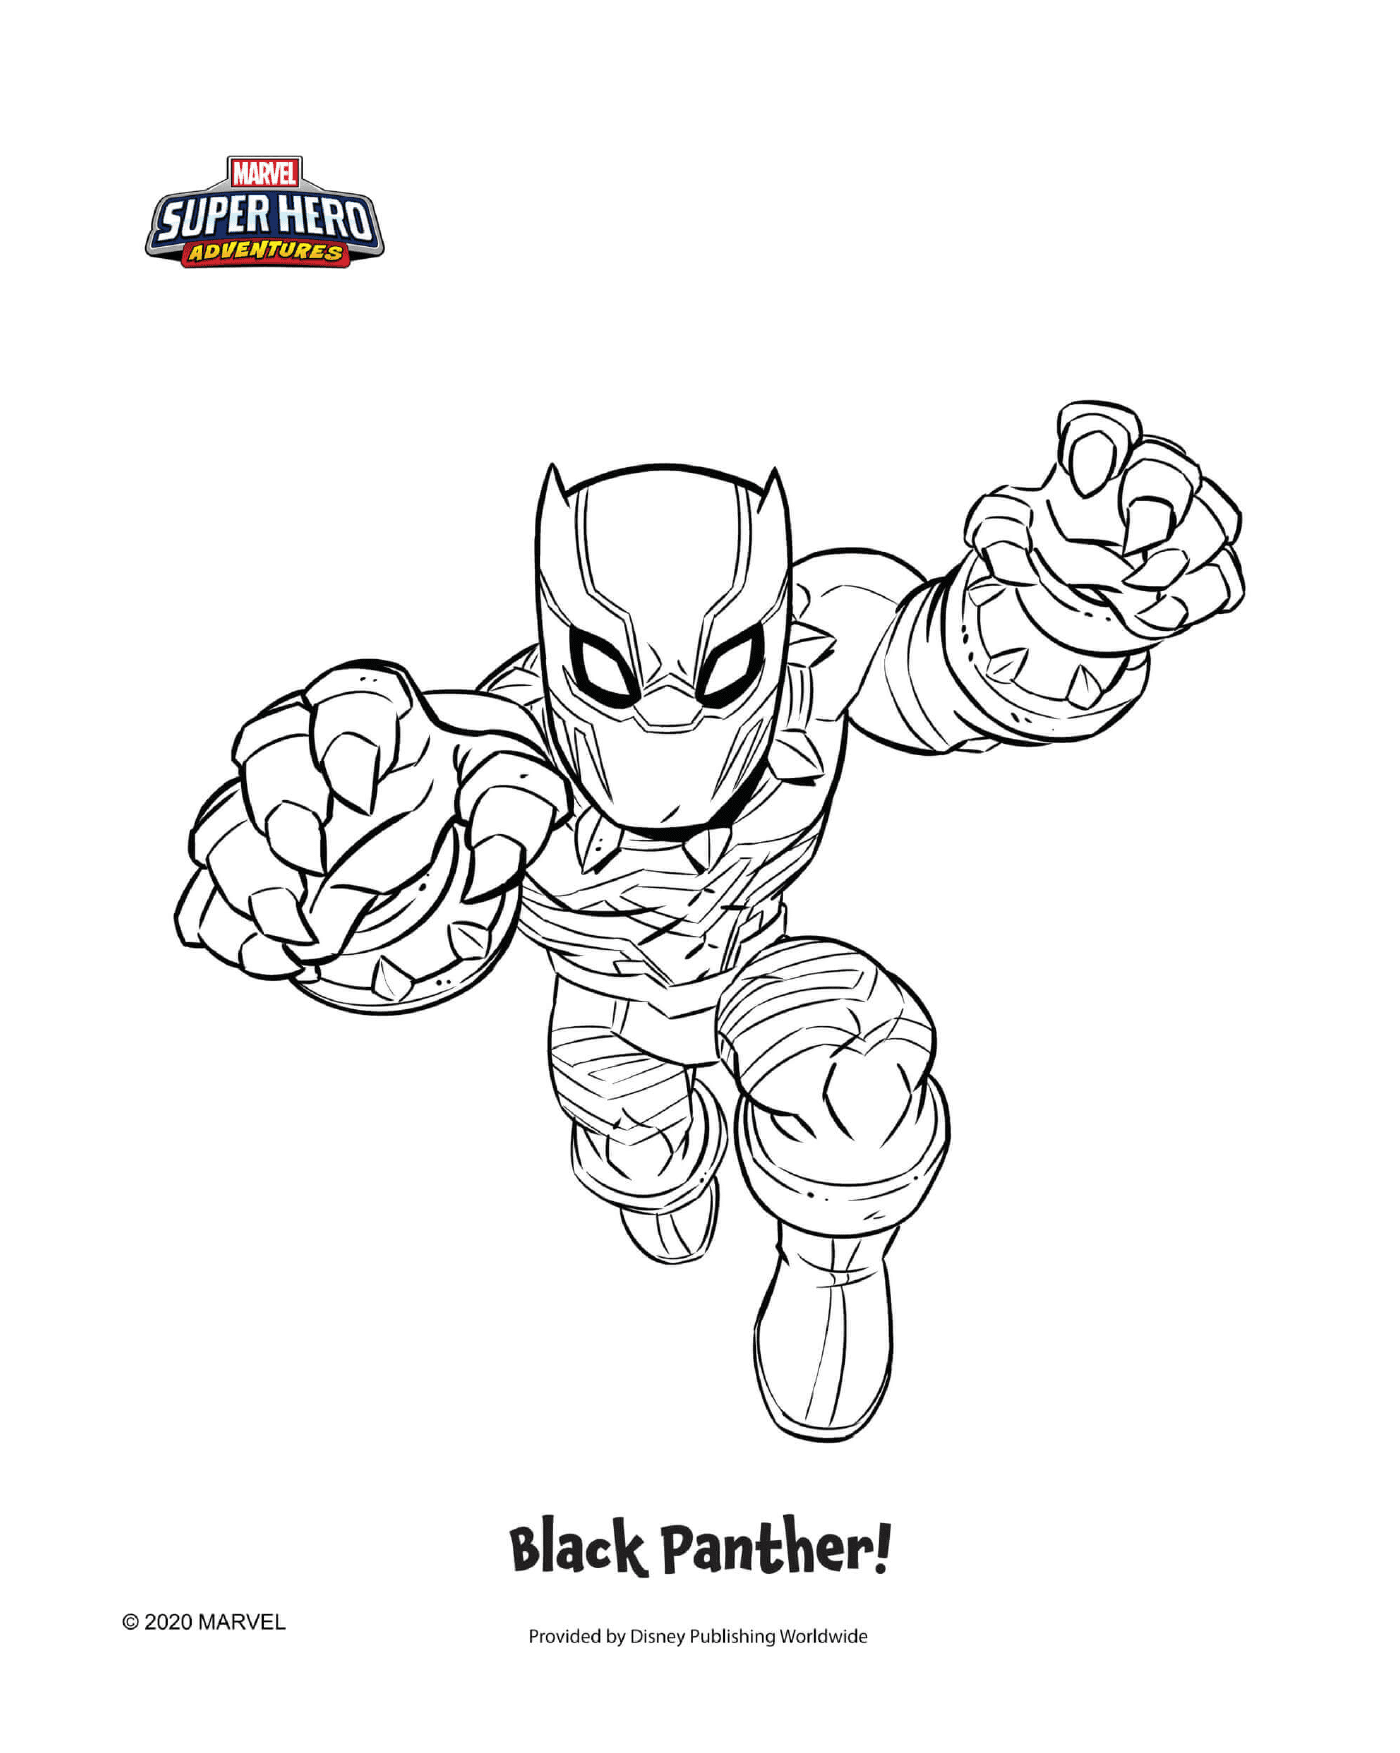  Black Panther, a superhero 